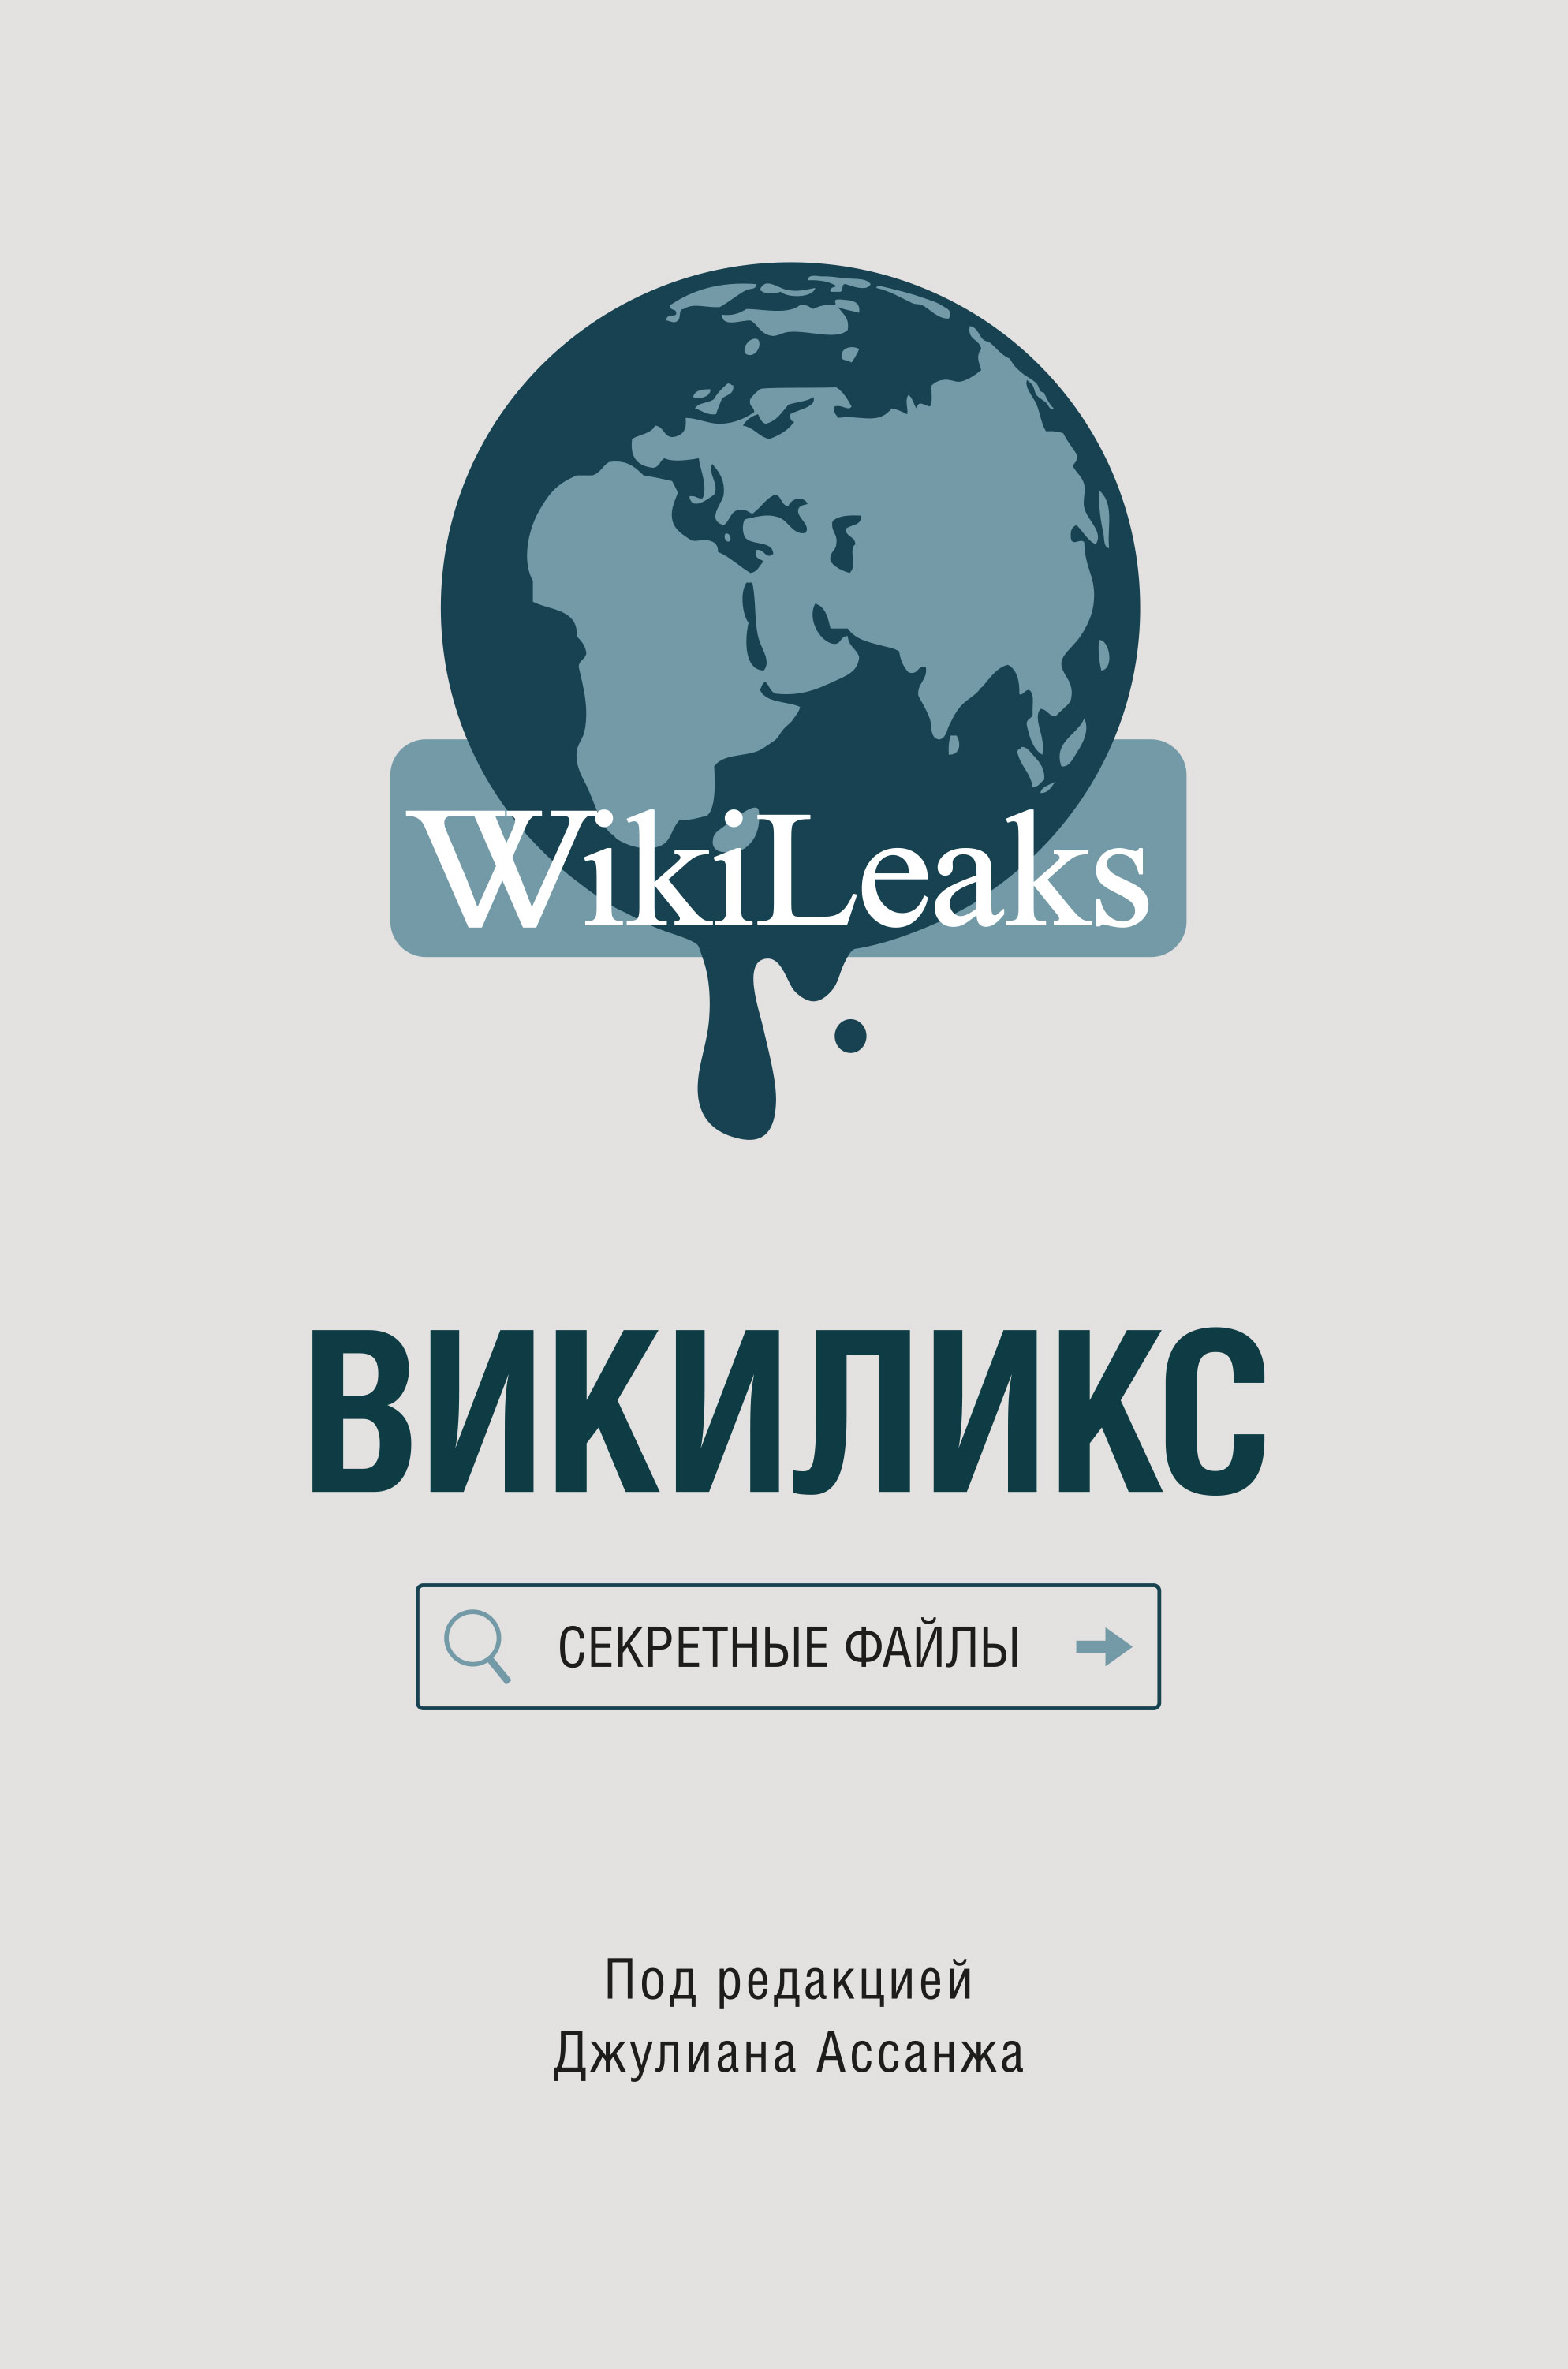 Книга Викиликс: Секретные файлы из серии , созданная  Сборник, может относится к жанру Политика, политология, Зарубежная образовательная литература. Стоимость электронной книги Викиликс: Секретные файлы с идентификатором 20604417 составляет 399.00 руб.